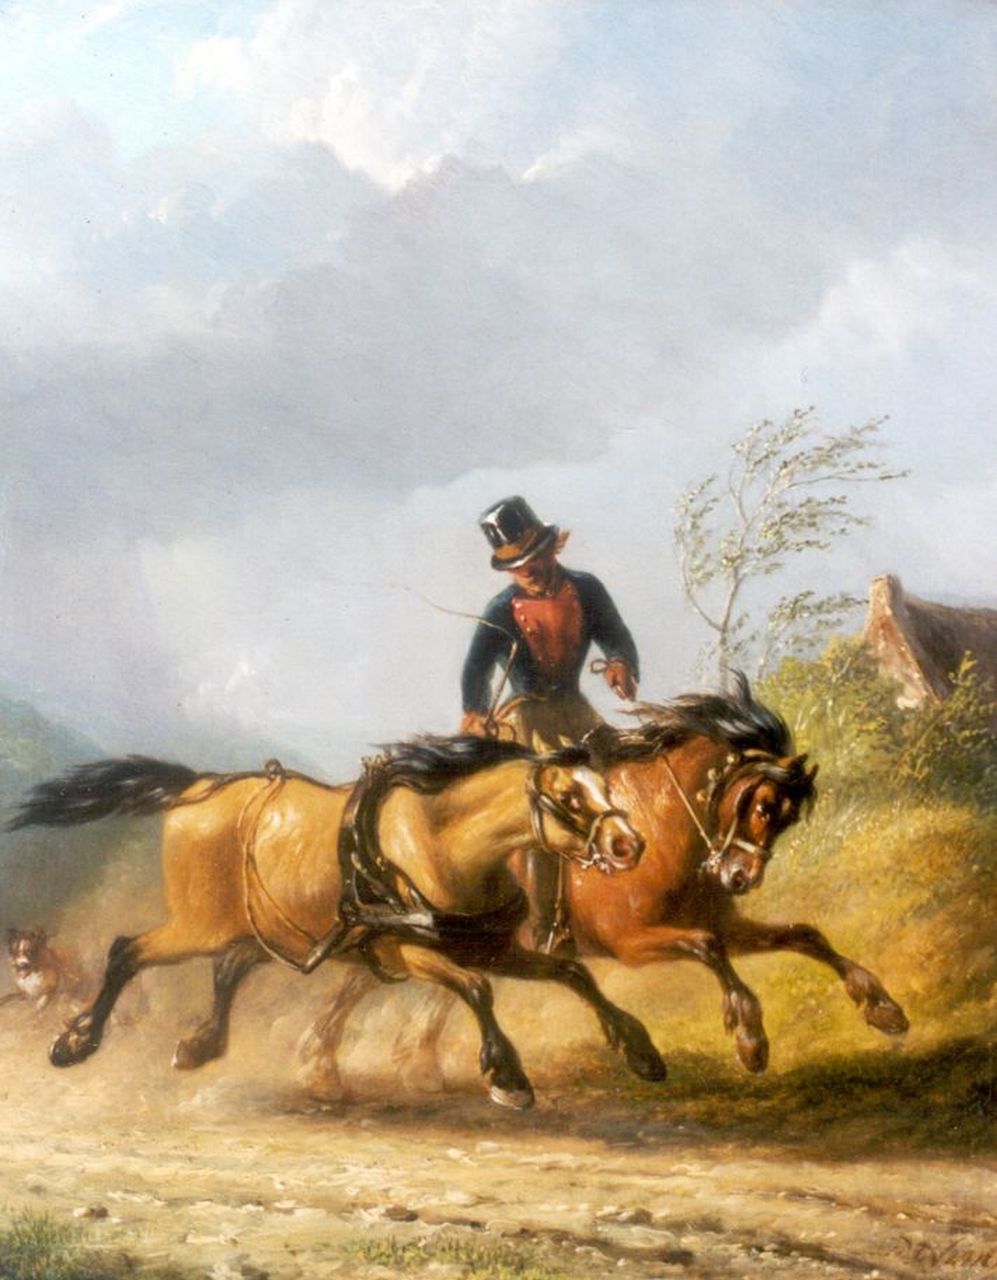 Os P.F. van | Pieter Frederik van Os, Untameable horse, Öl auf Holz 30,0 x 24,5 cm, signed l.r.